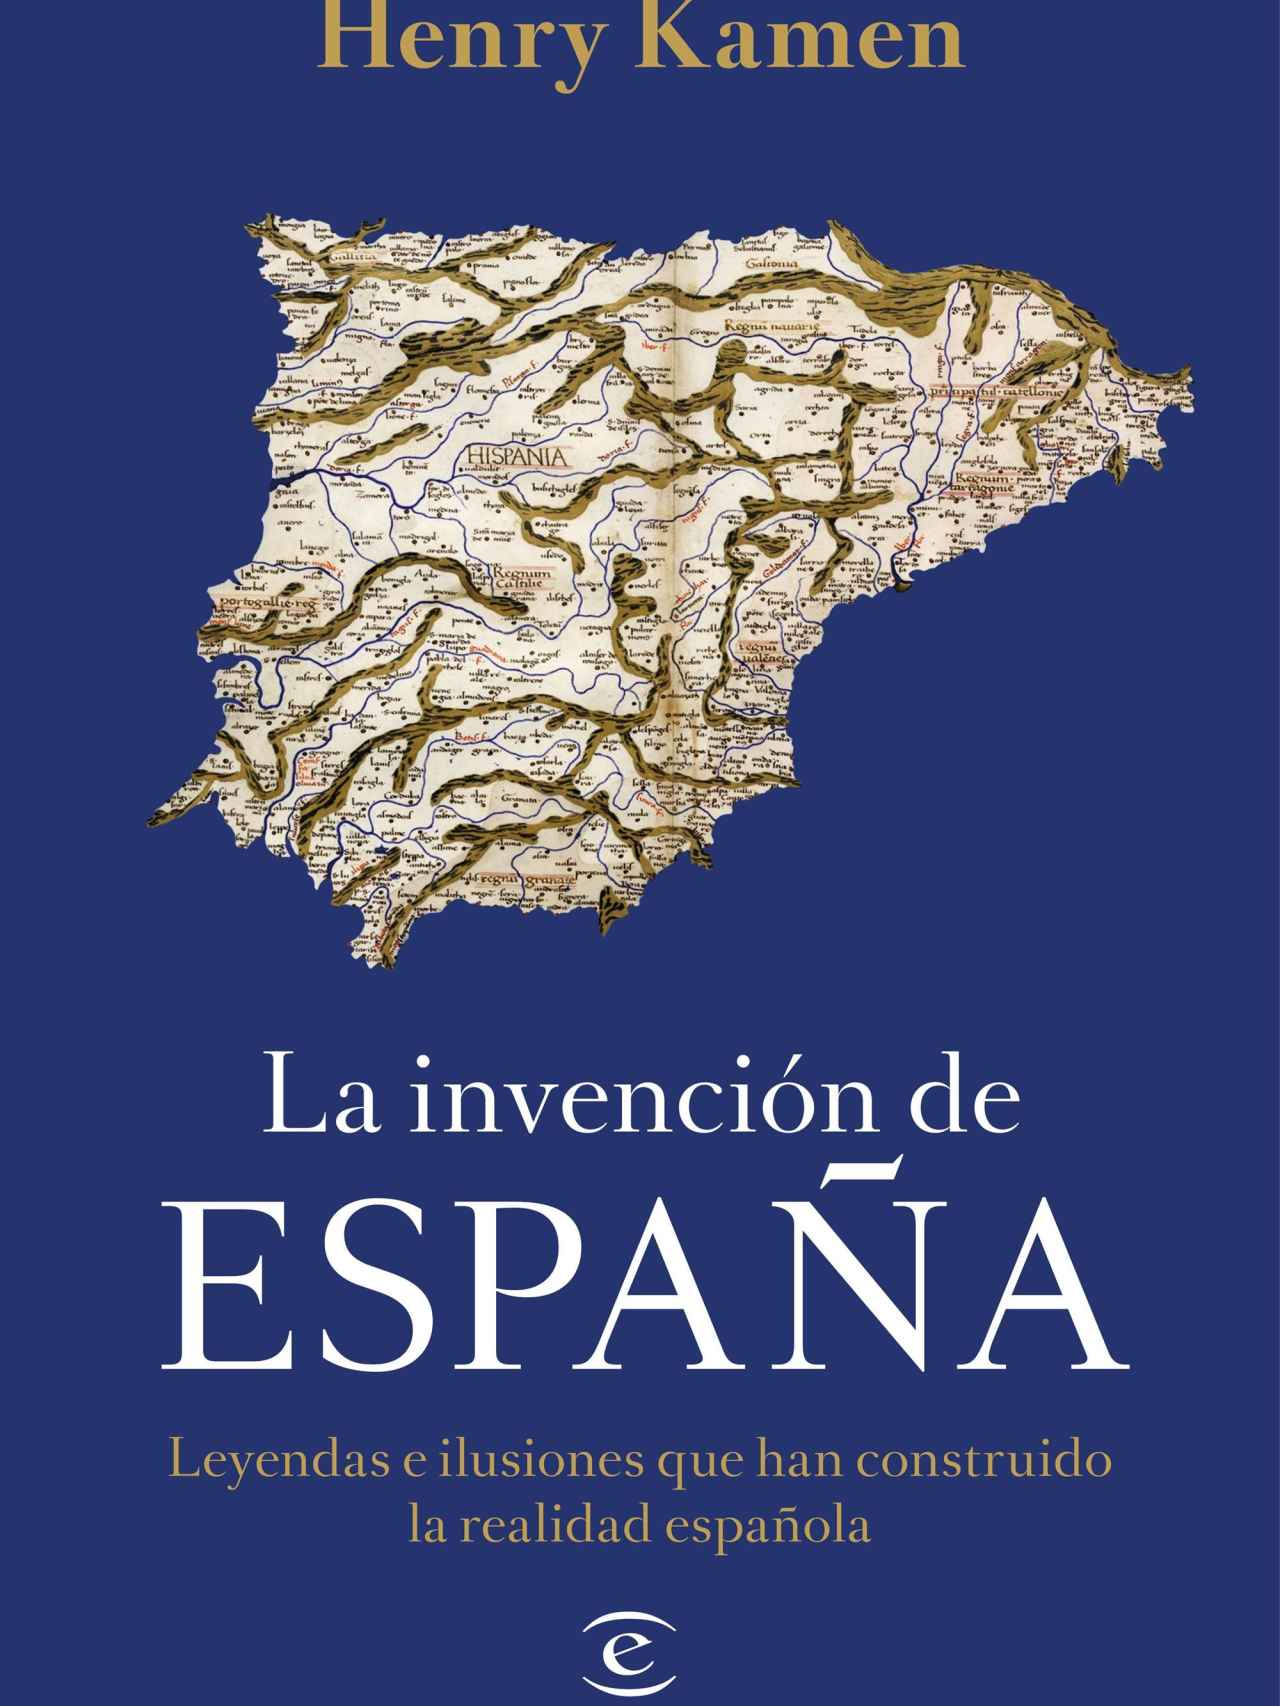 Portada de 'La invención de España'.